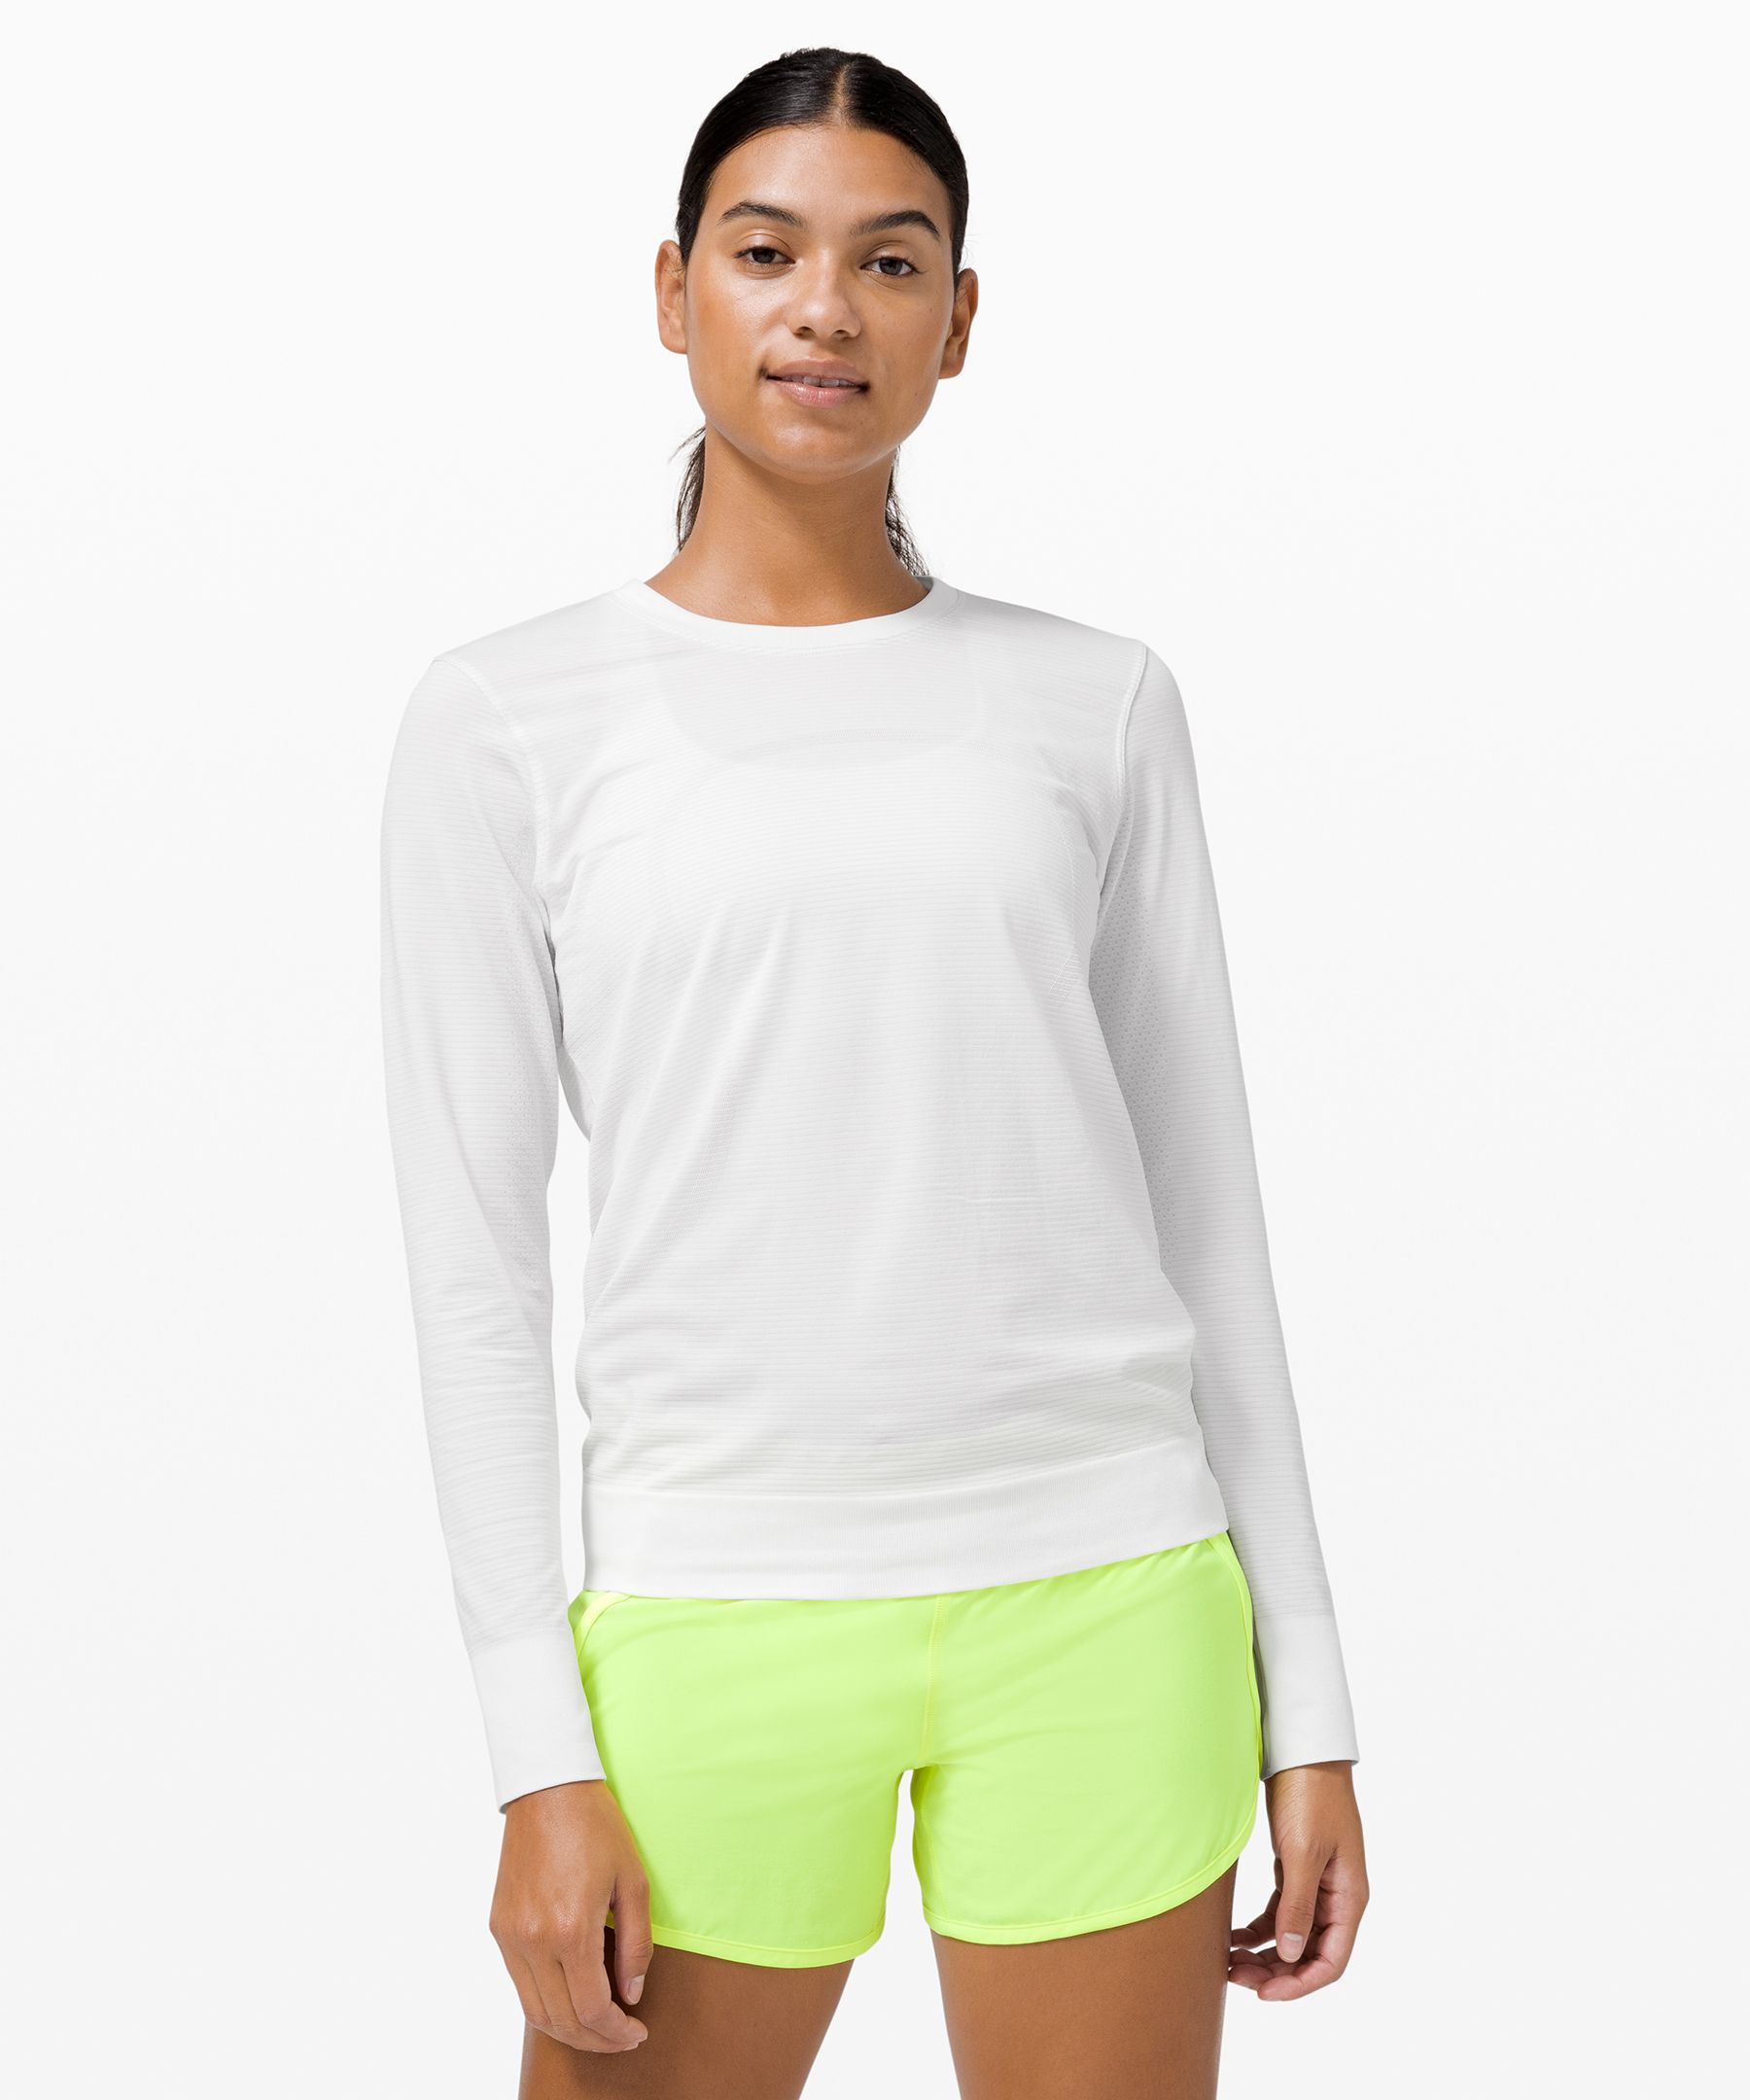 Lululemon Swiftly Breathe Relaxed-fit Long Sleeve Shirt - Slate/white